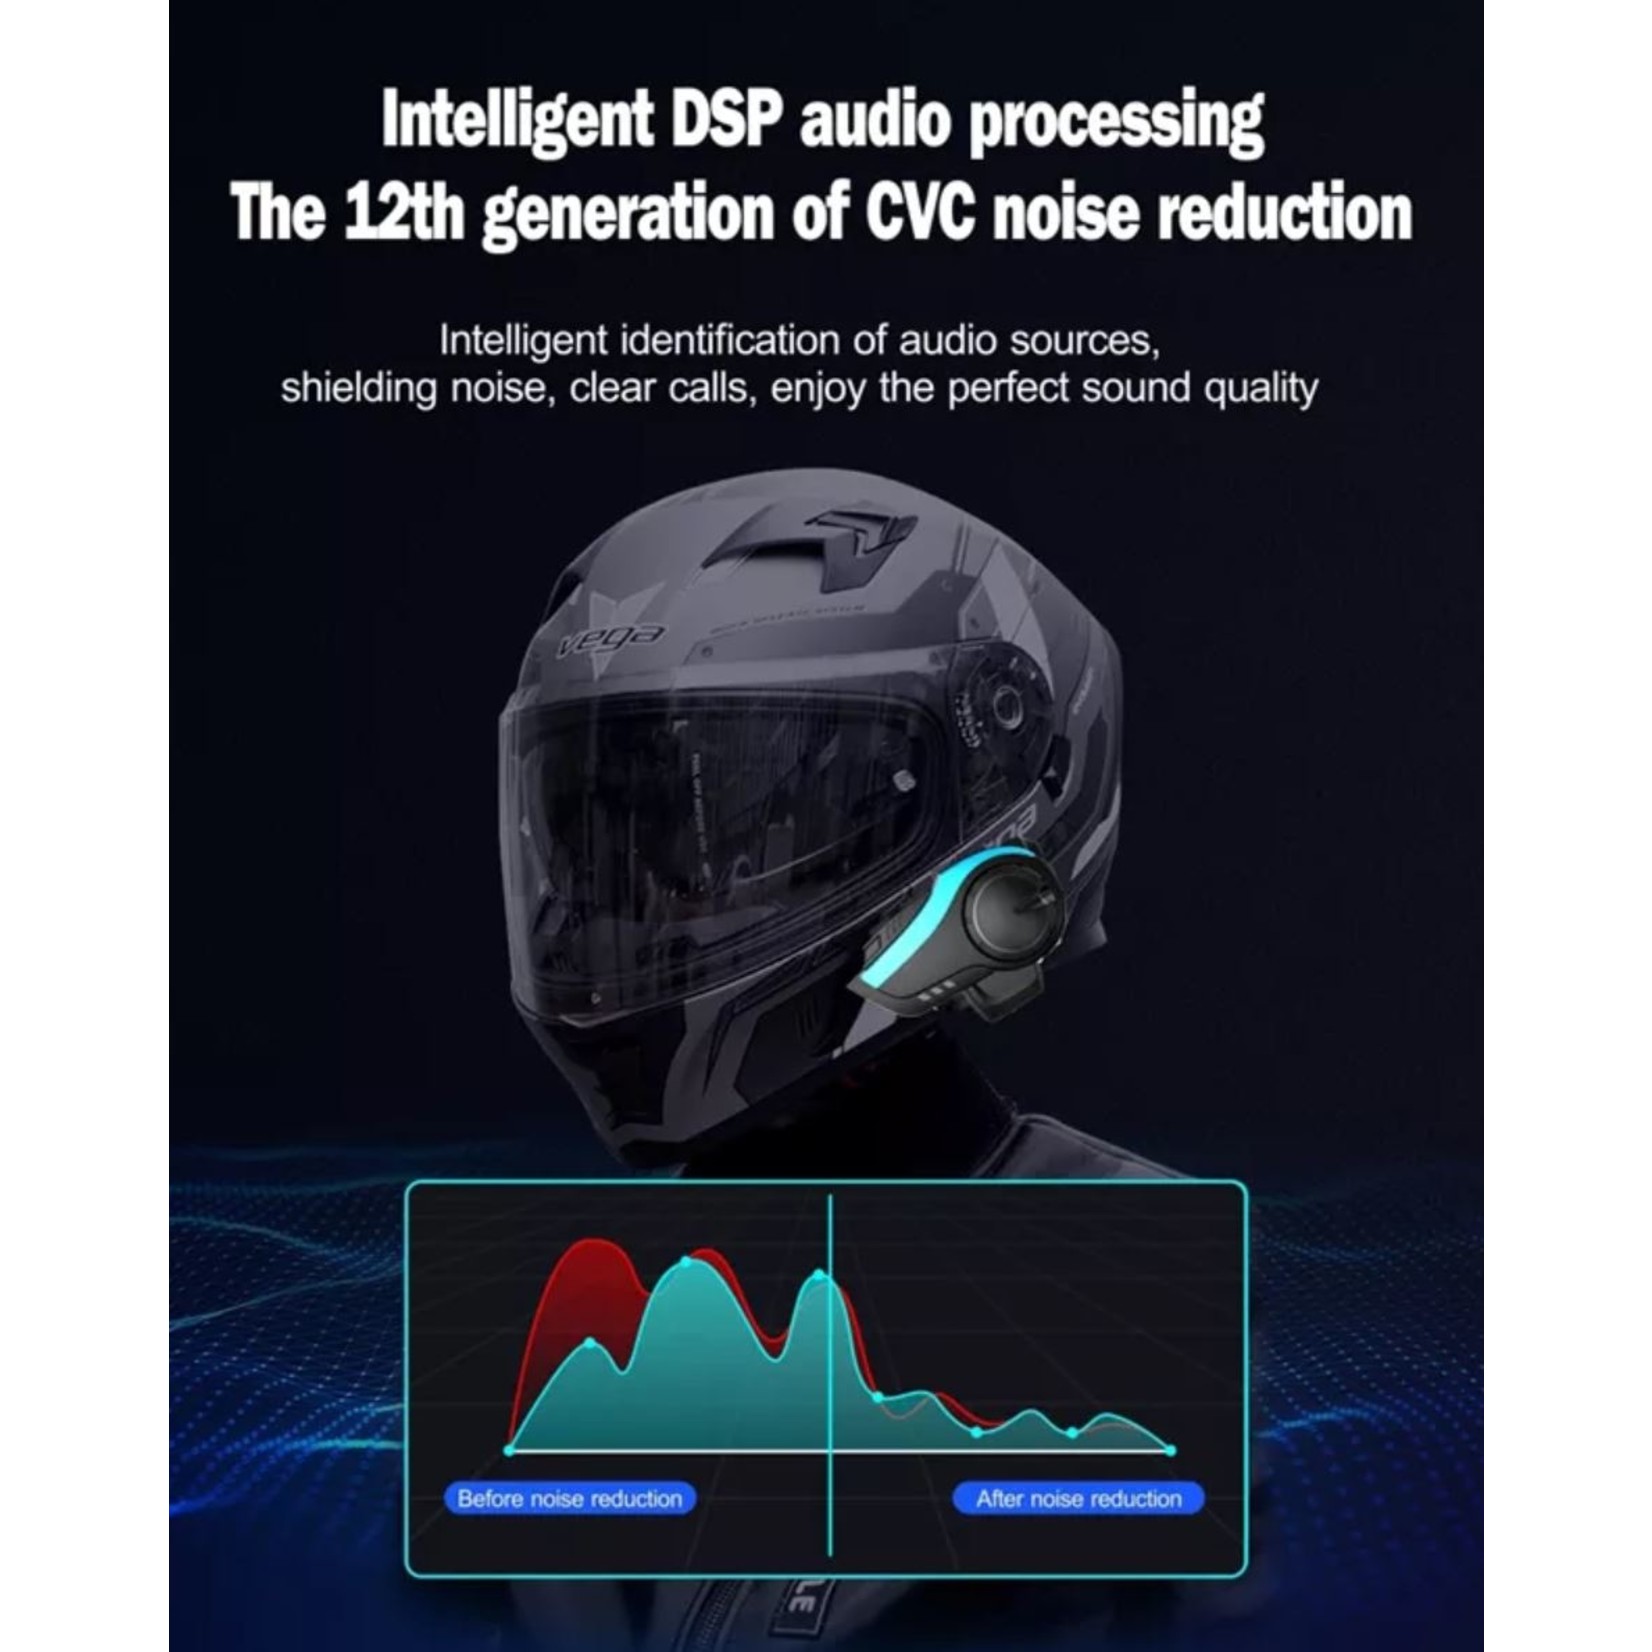 HE Products Intercom voor helm Motoraccessoires muziek delen Full Duplex 6 rijders 2000 meter Intercom-headset voor rijders